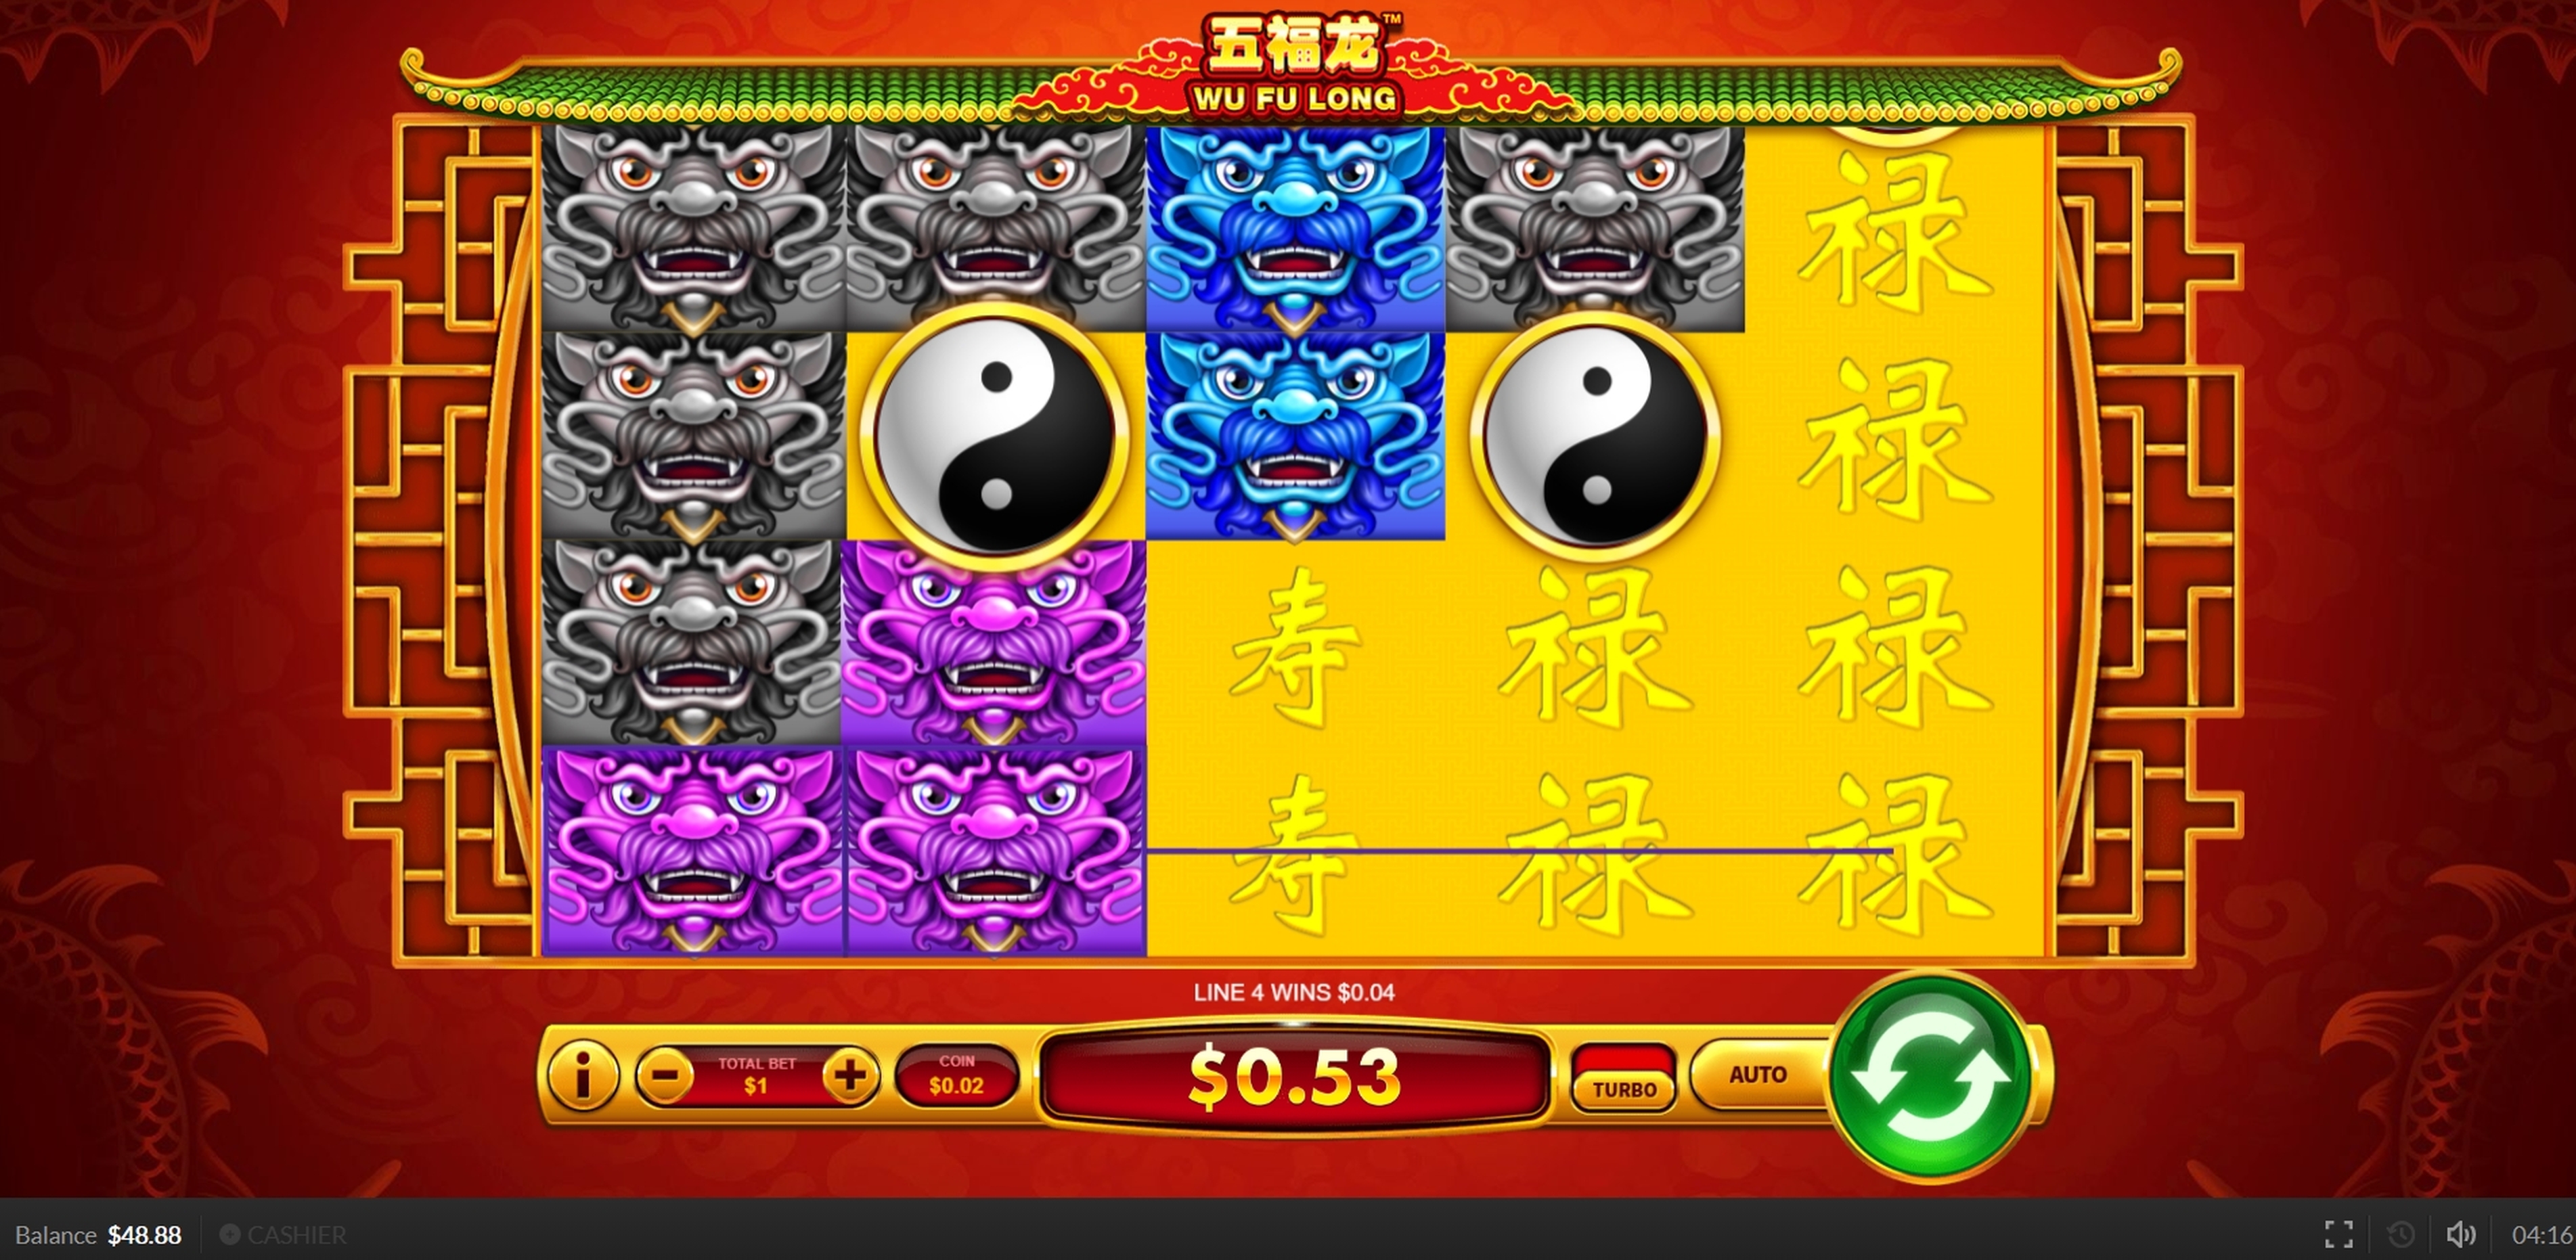 Win Money in Wu Fu Long Free Slot Game by Skywind